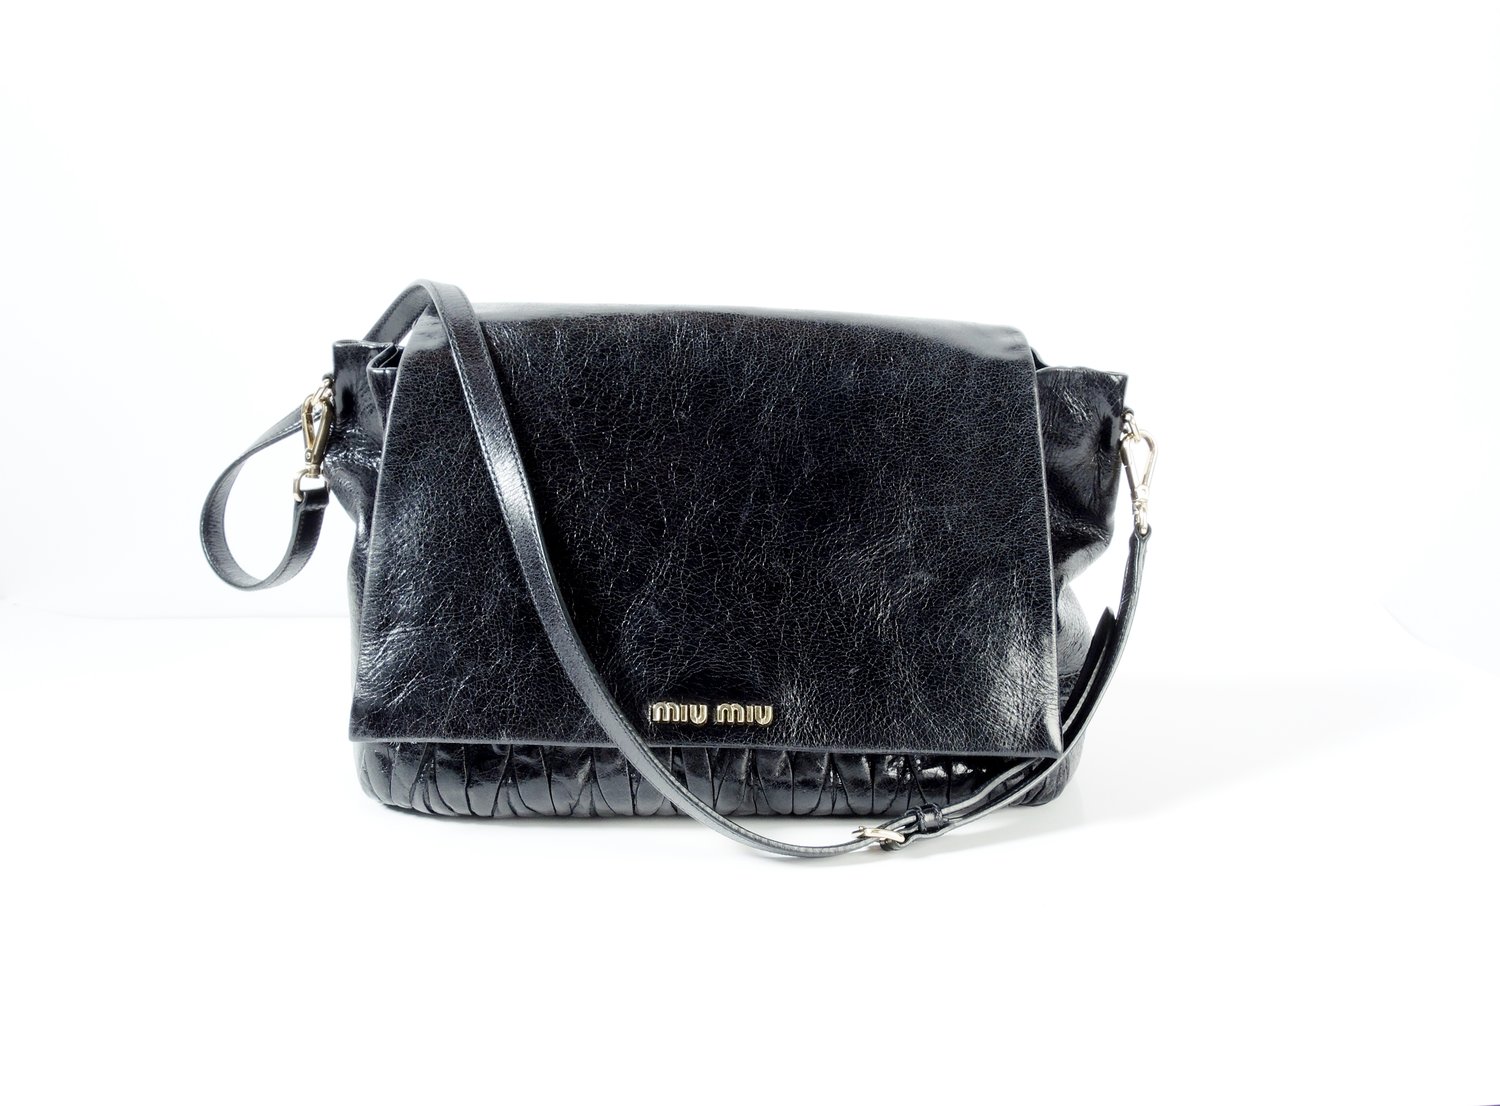 MIU MIU Black Flap Shoulder Bag — Seams to Fit Women's Consignment